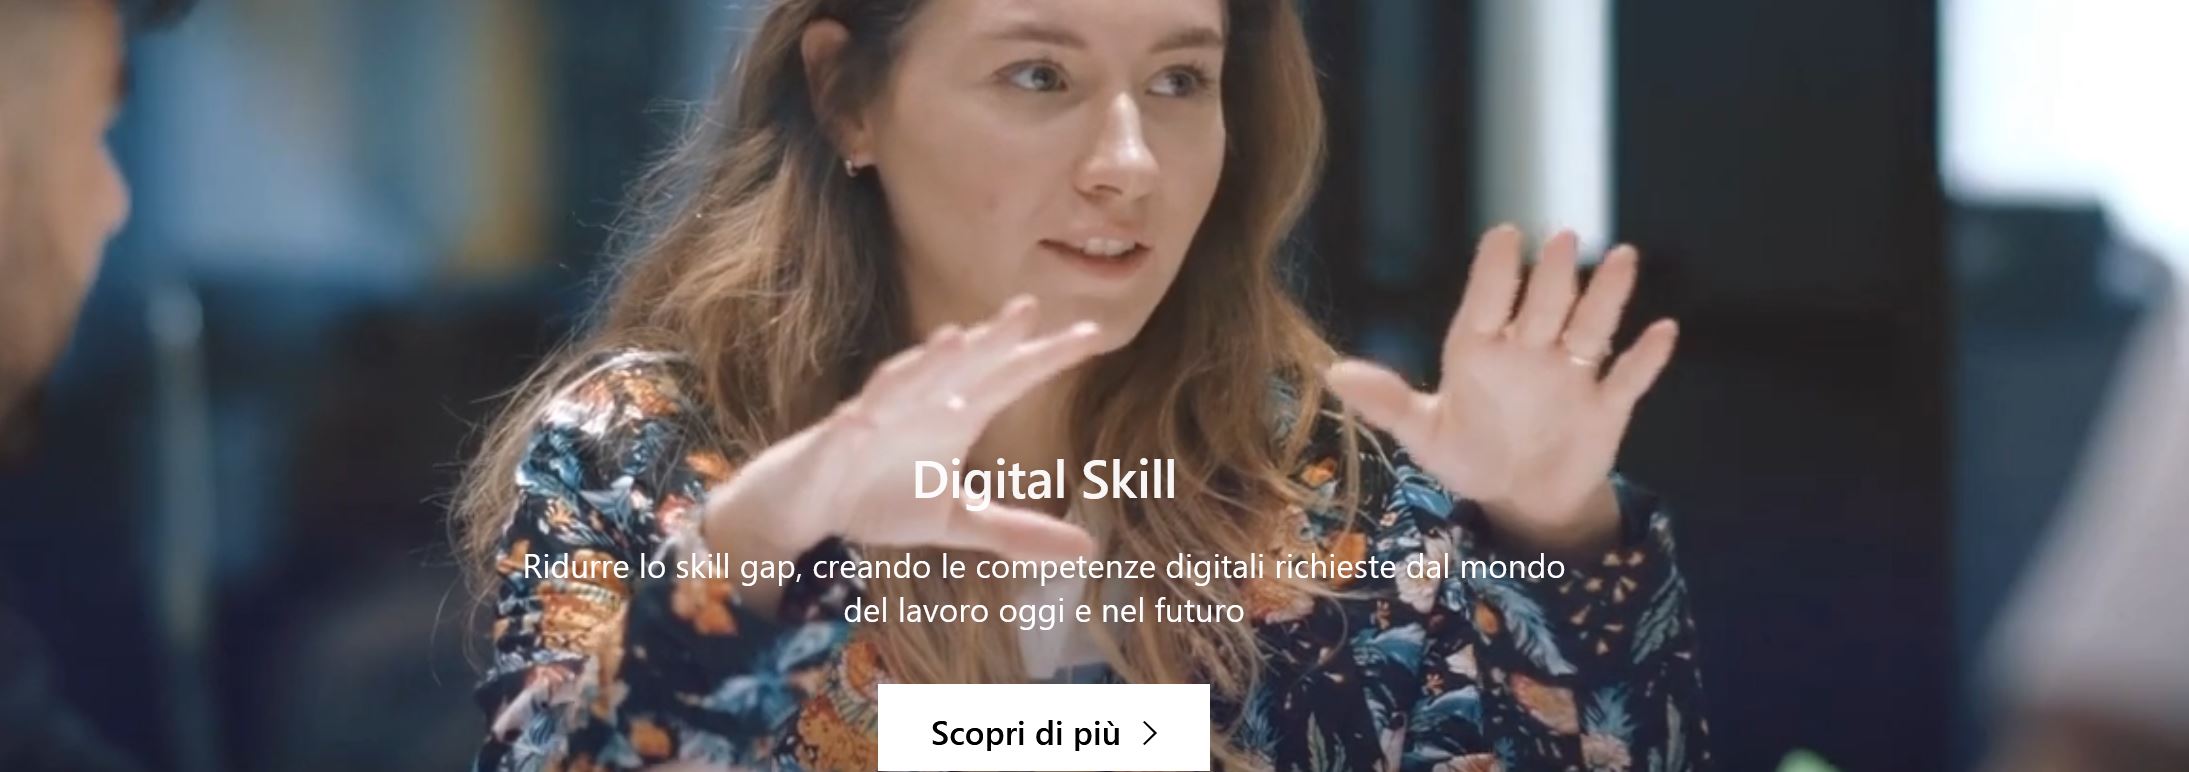 Microsoft Ambizione Italia formazione